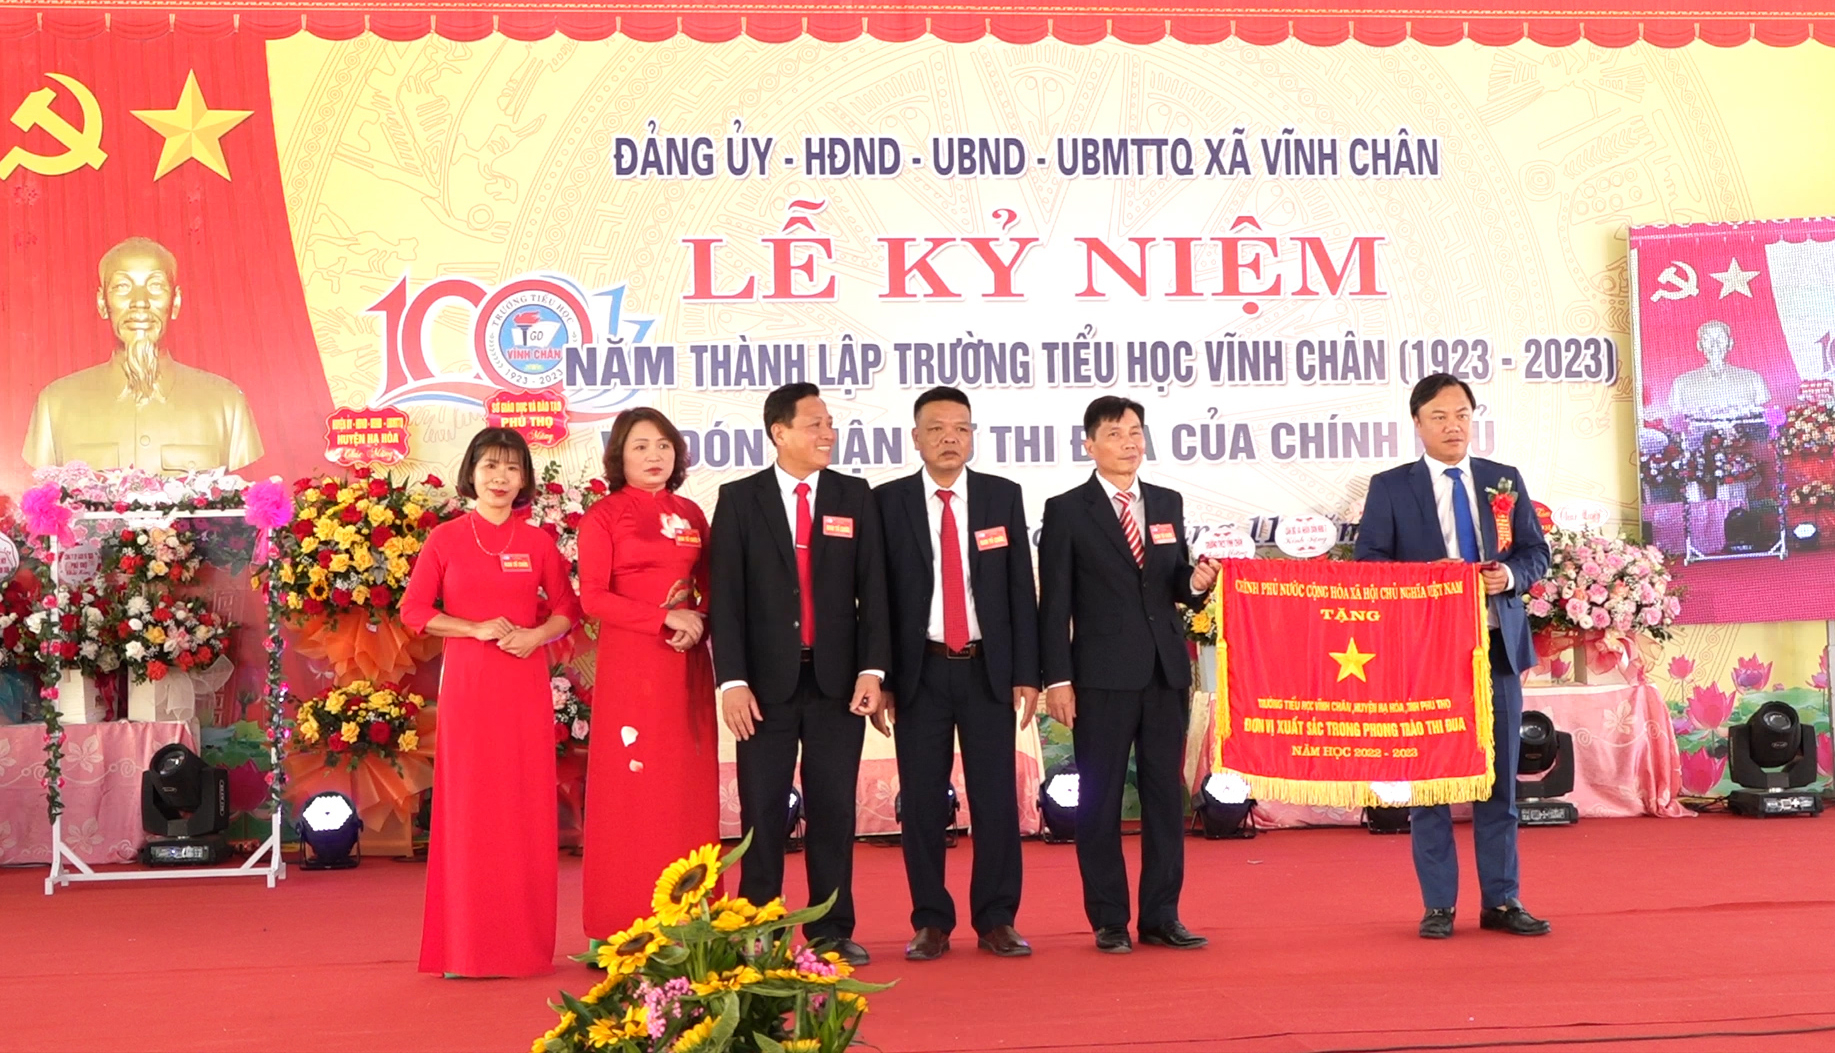 Đồng chí Nguyễn Ngọc Anh – Phó bí thư huyện ủy, Chủ tịch UBND huyện  trao Cờ thi đua của Chính phủ cho Trường Tiểu học Vĩnh Chân